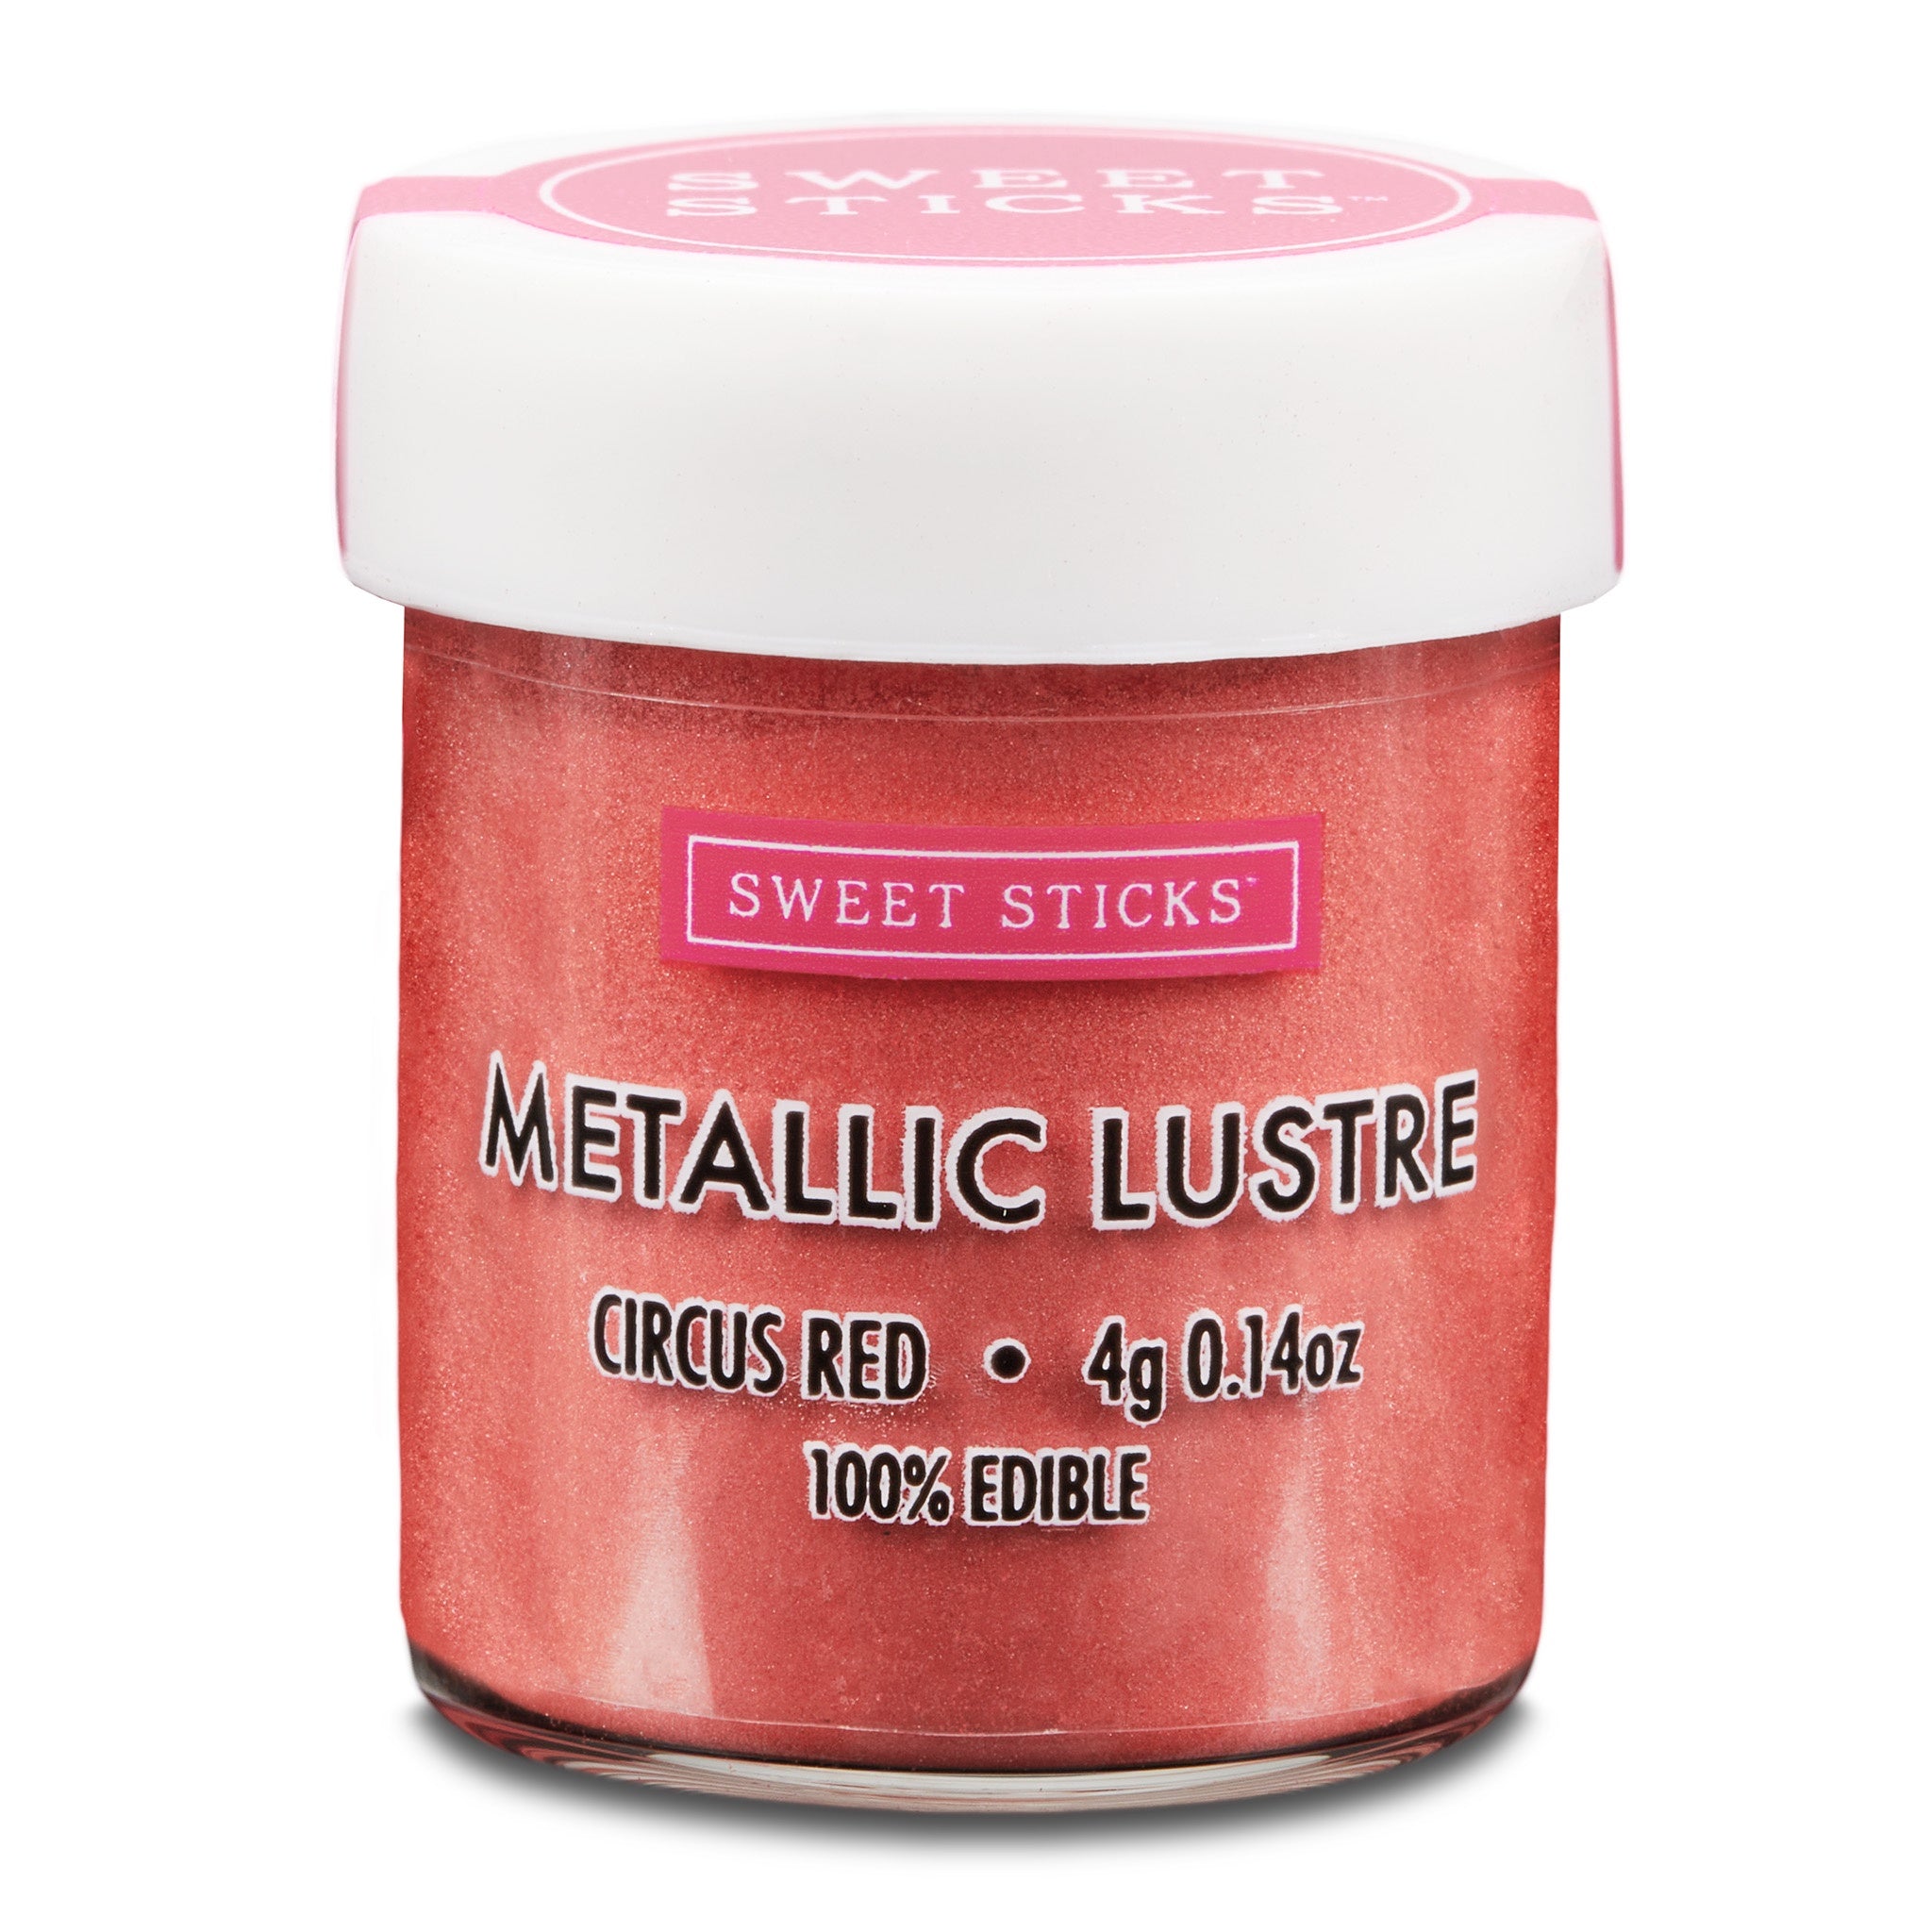 Sweet Sticks Metallic Lustre 4g - Circus Red